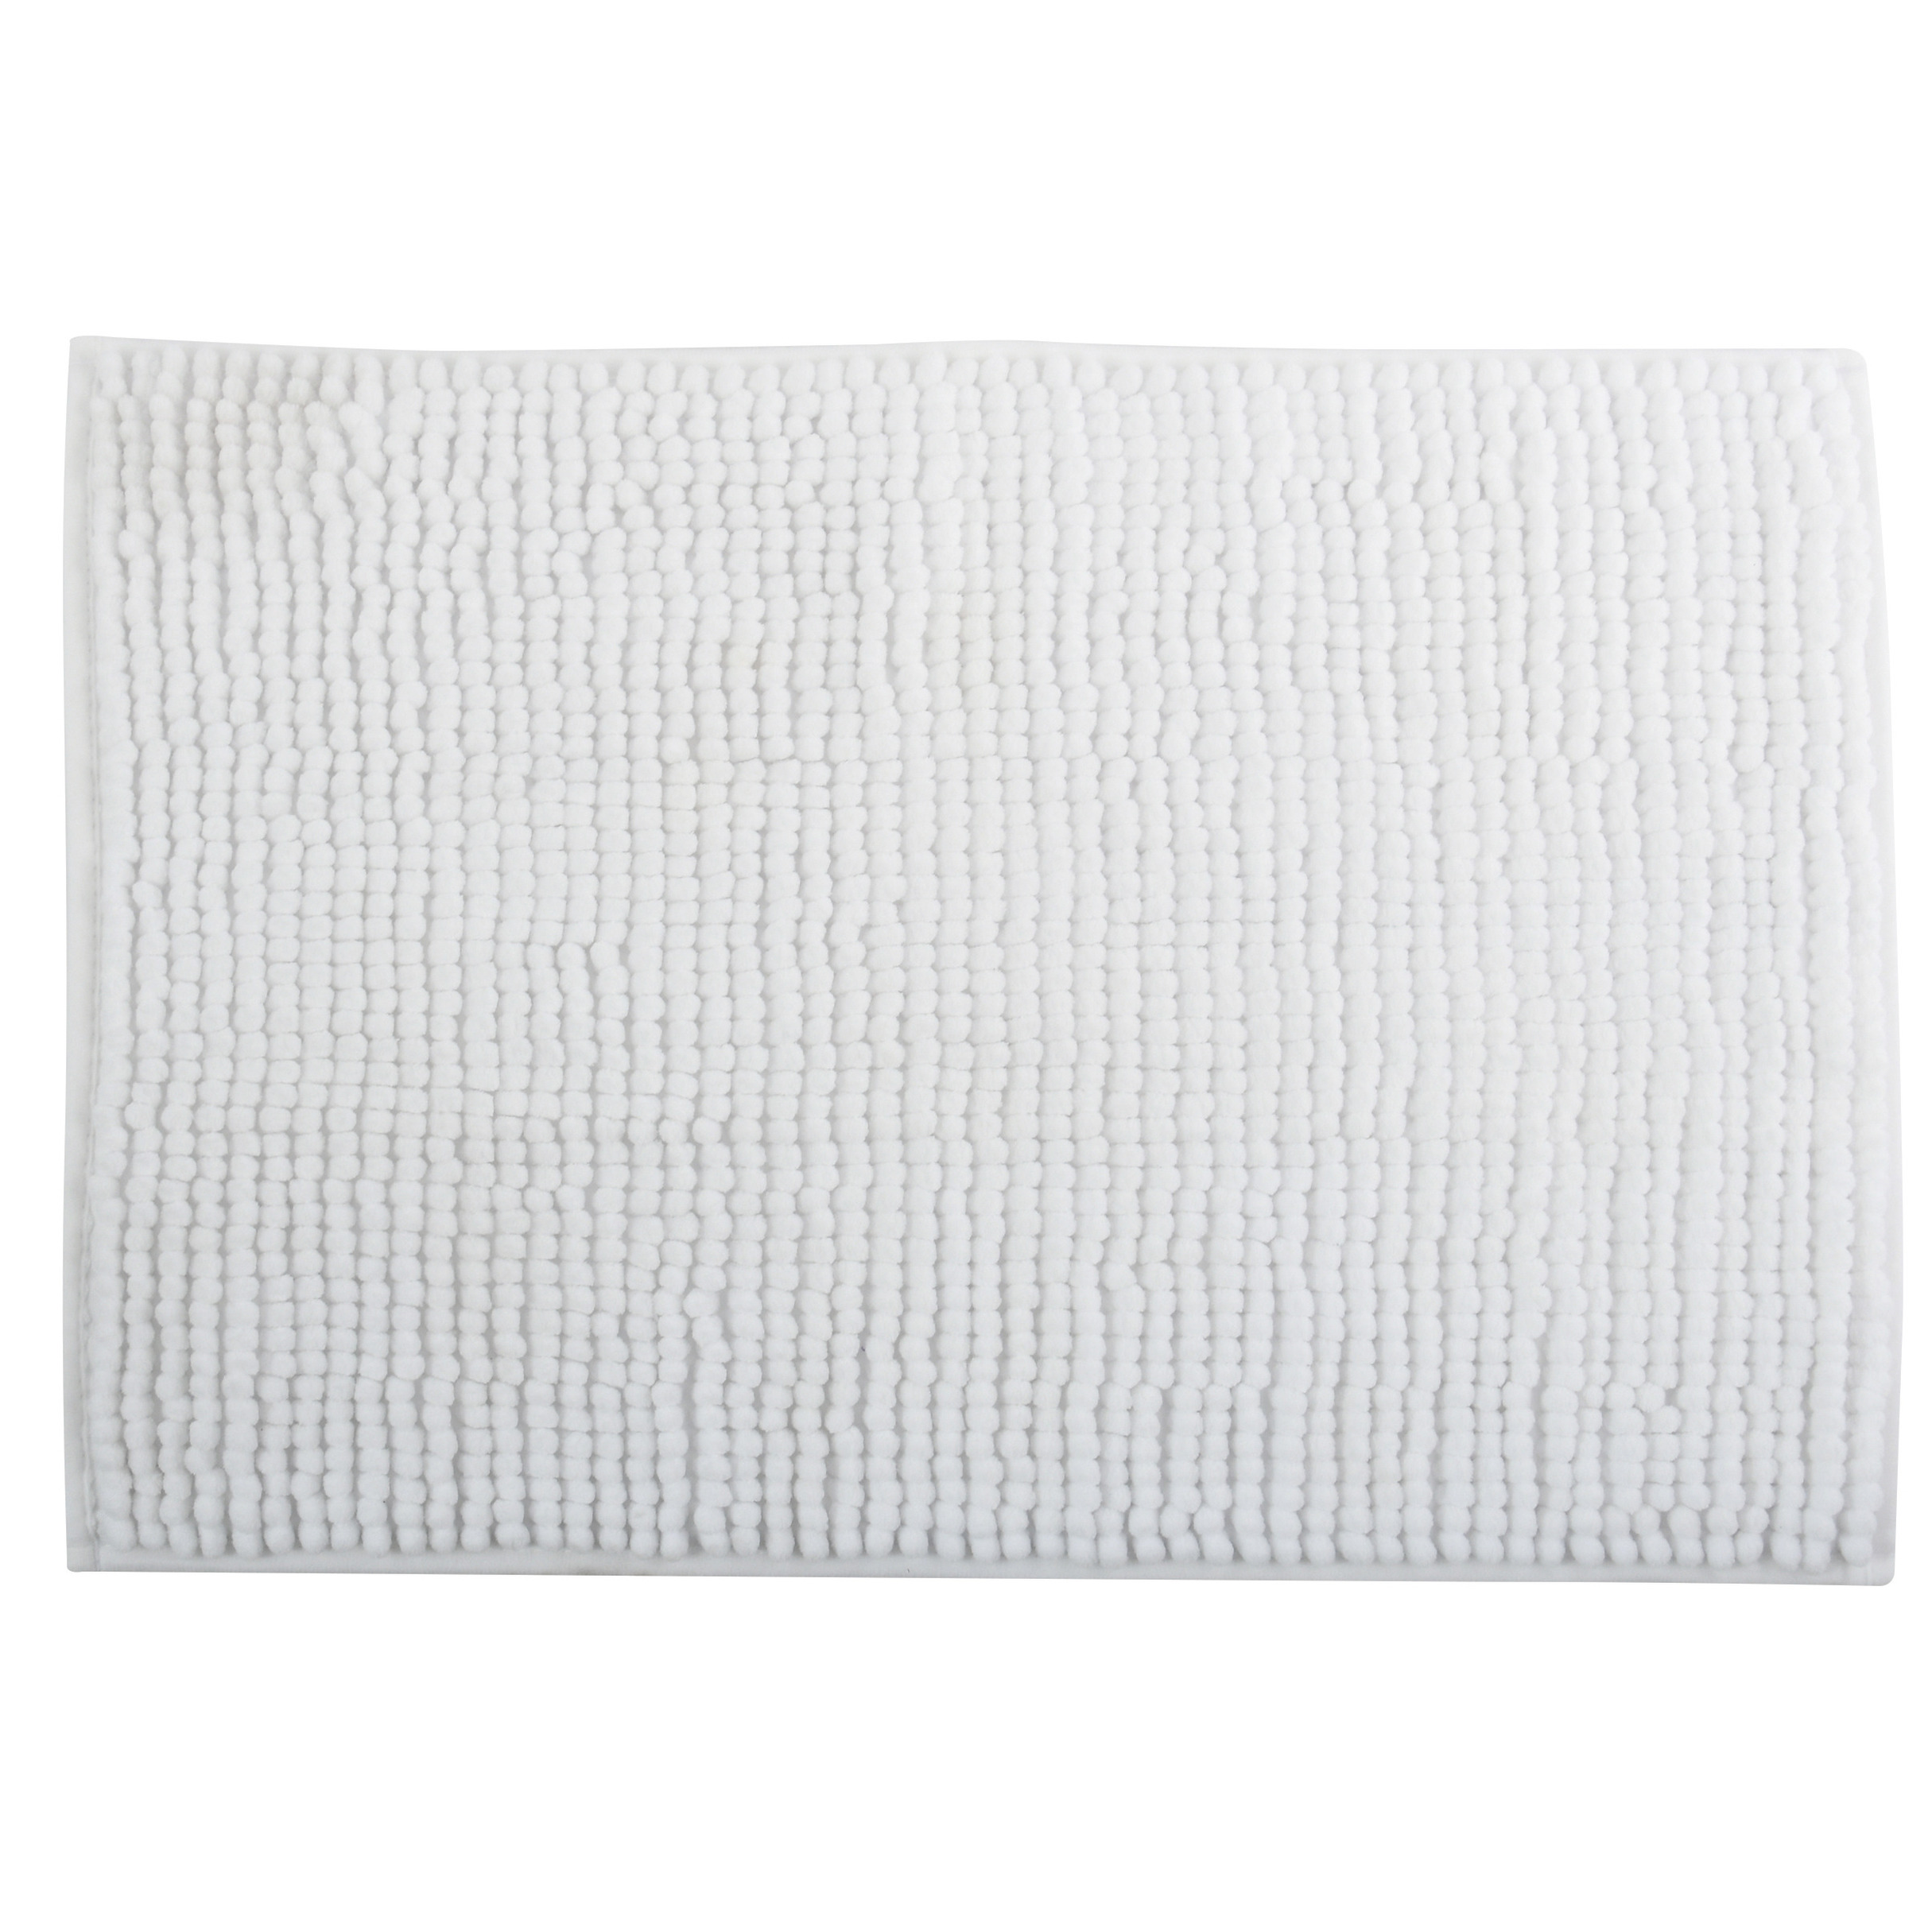 MSV Badkamerkleedje-badmat tapijt voor op de vloer ivoor wit 50 x 80 cm